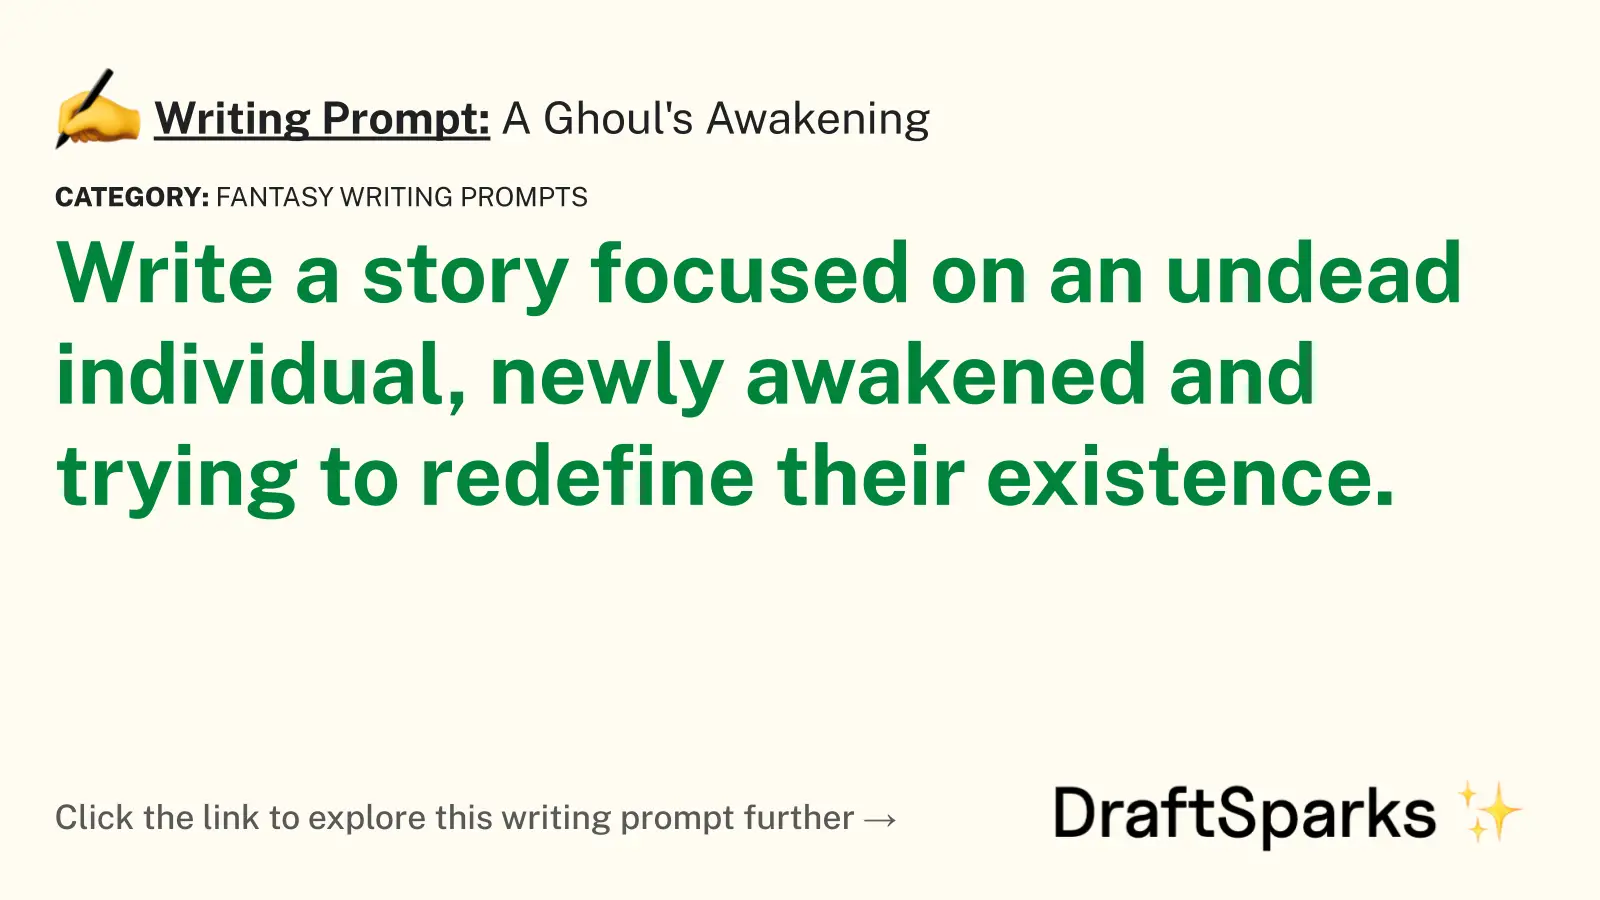 A Ghoul’s Awakening